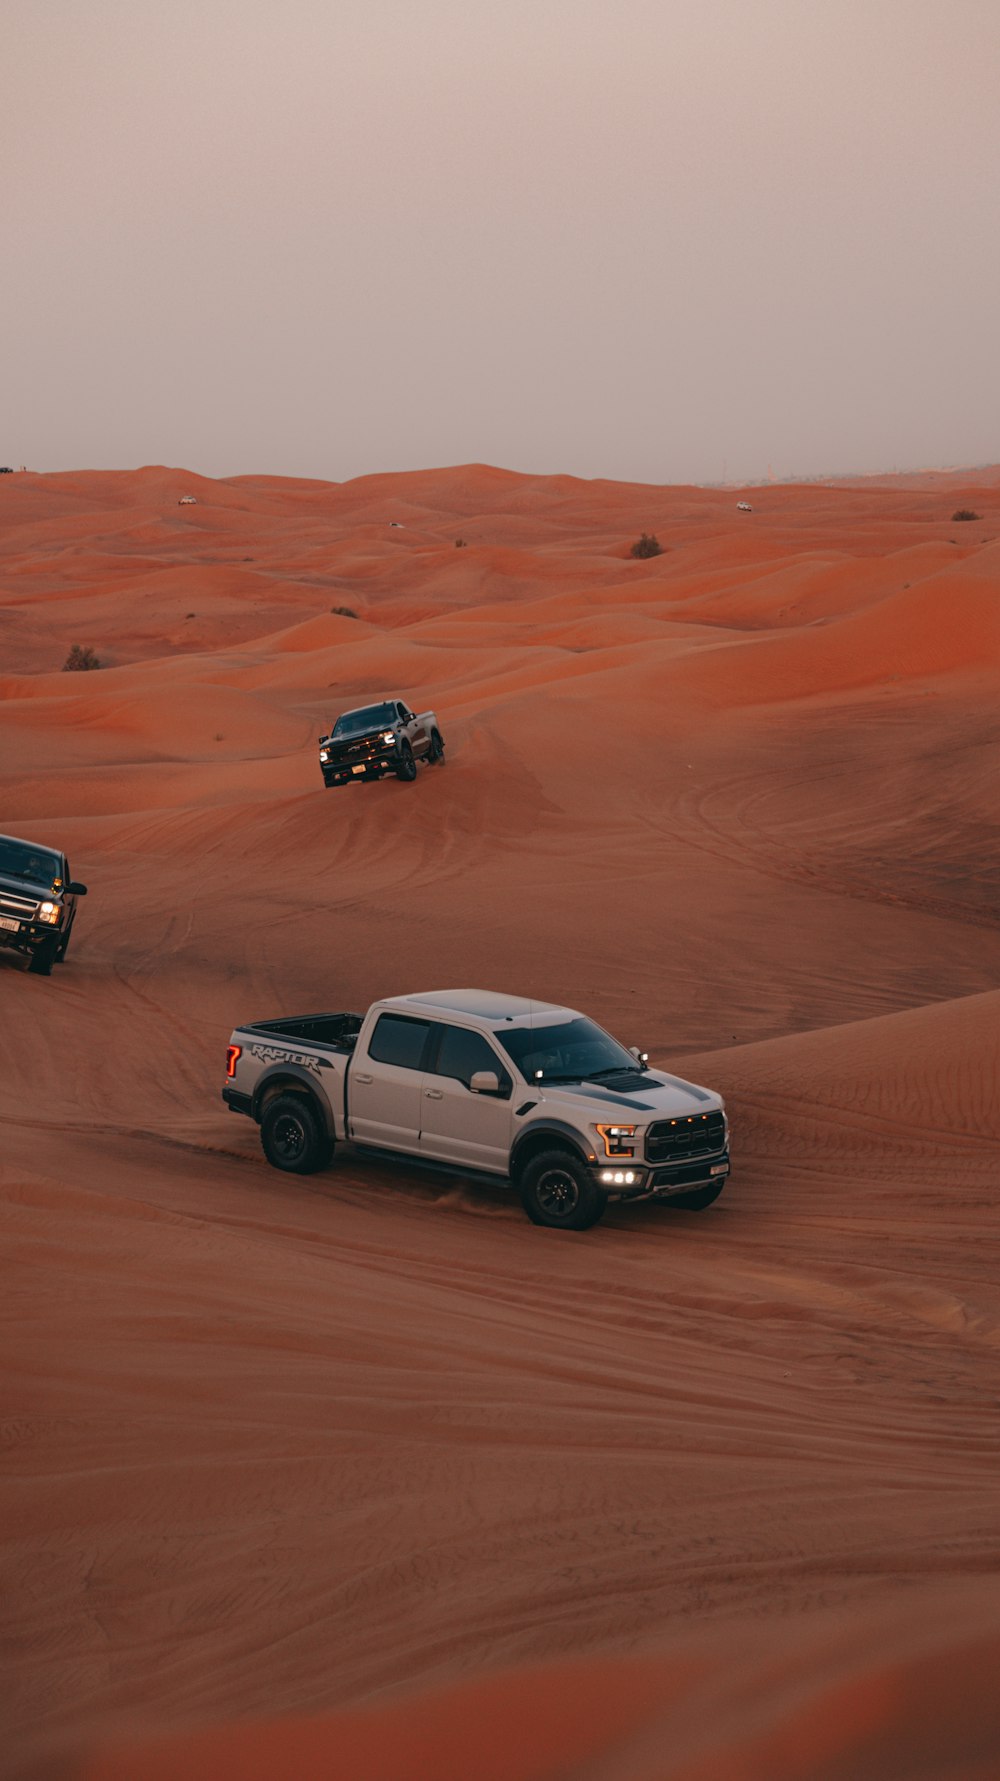 a couple of trucks driving through a desert